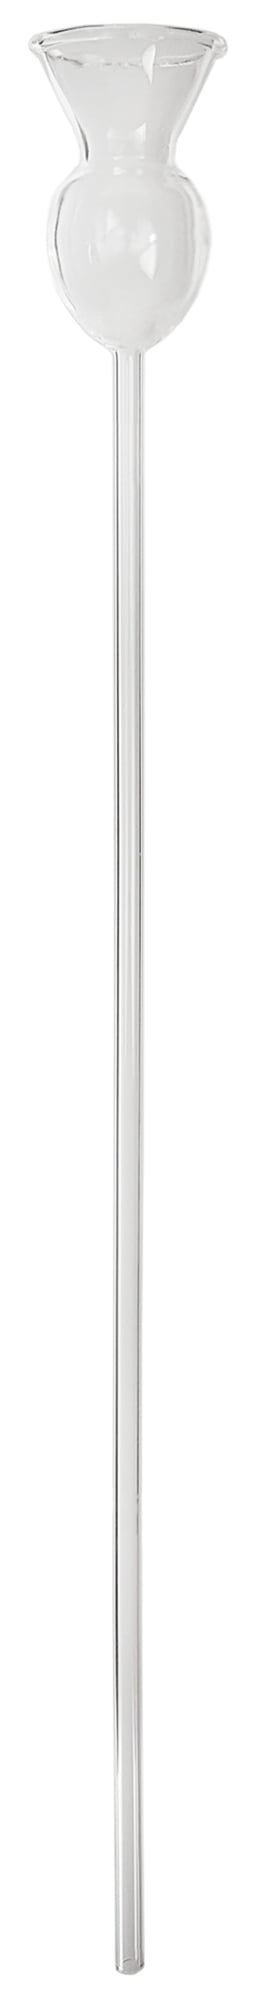 GSC International Borosilicate Glass Thistle Tube Long Stem 400 mm 